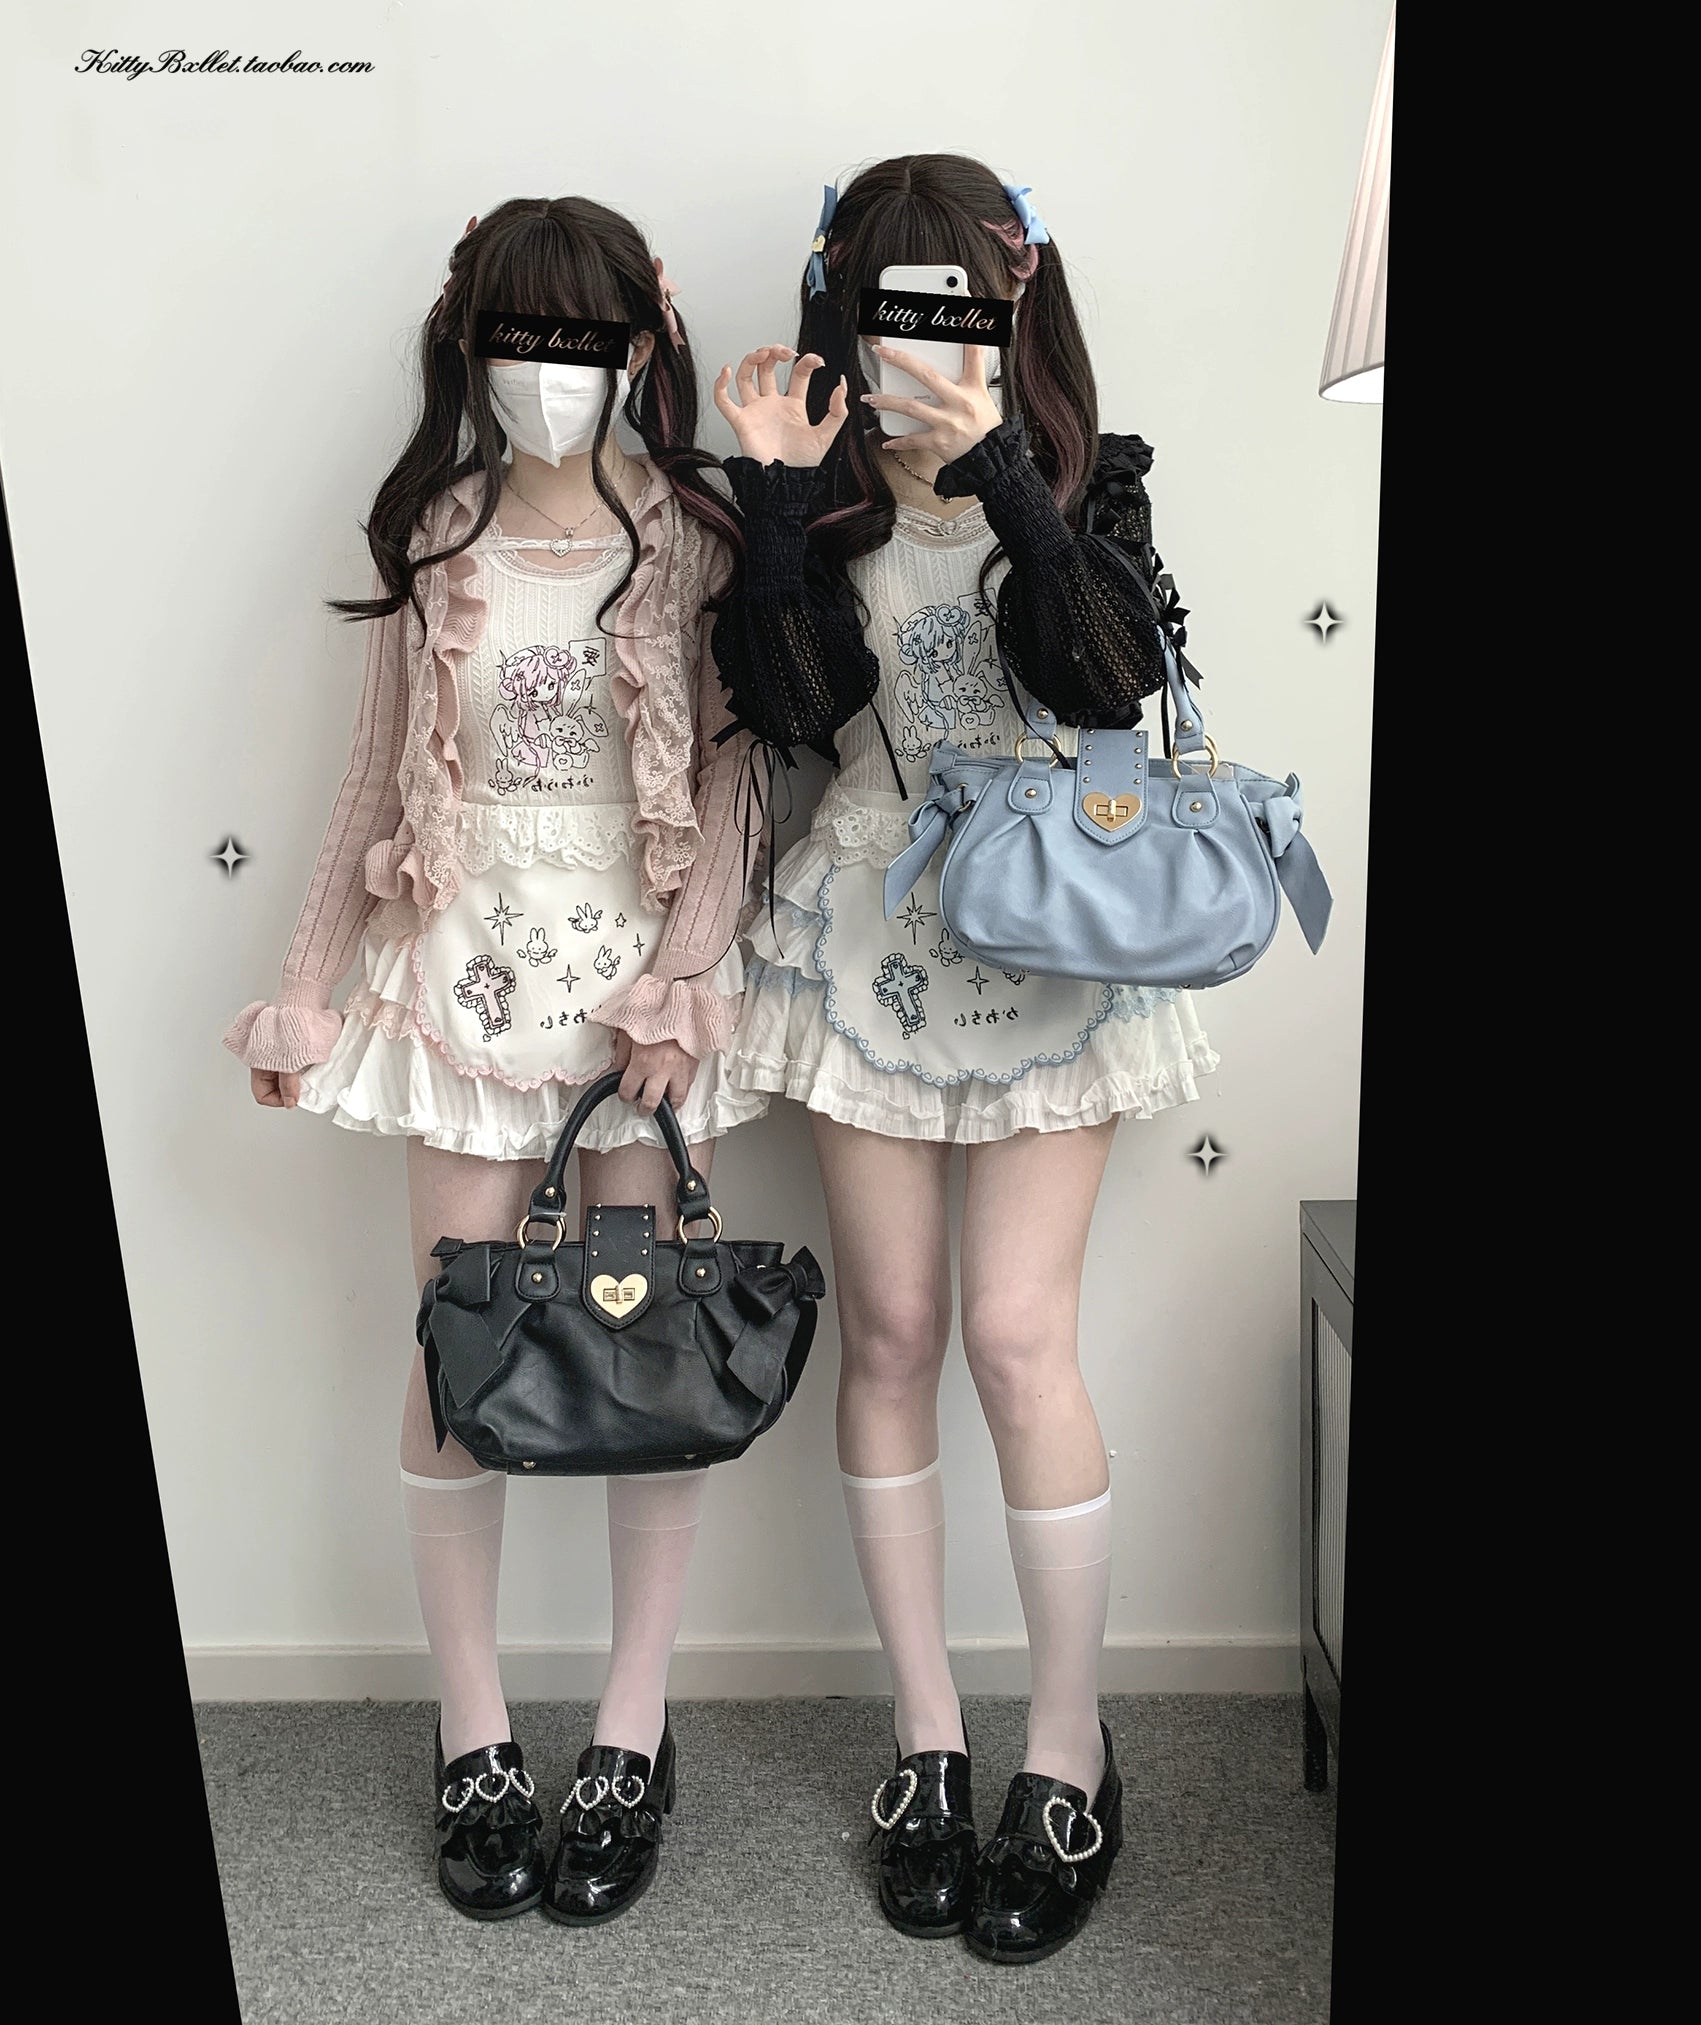 Ryousangata Skirt Lace Cake Skirt And Apron Set 36790:536170